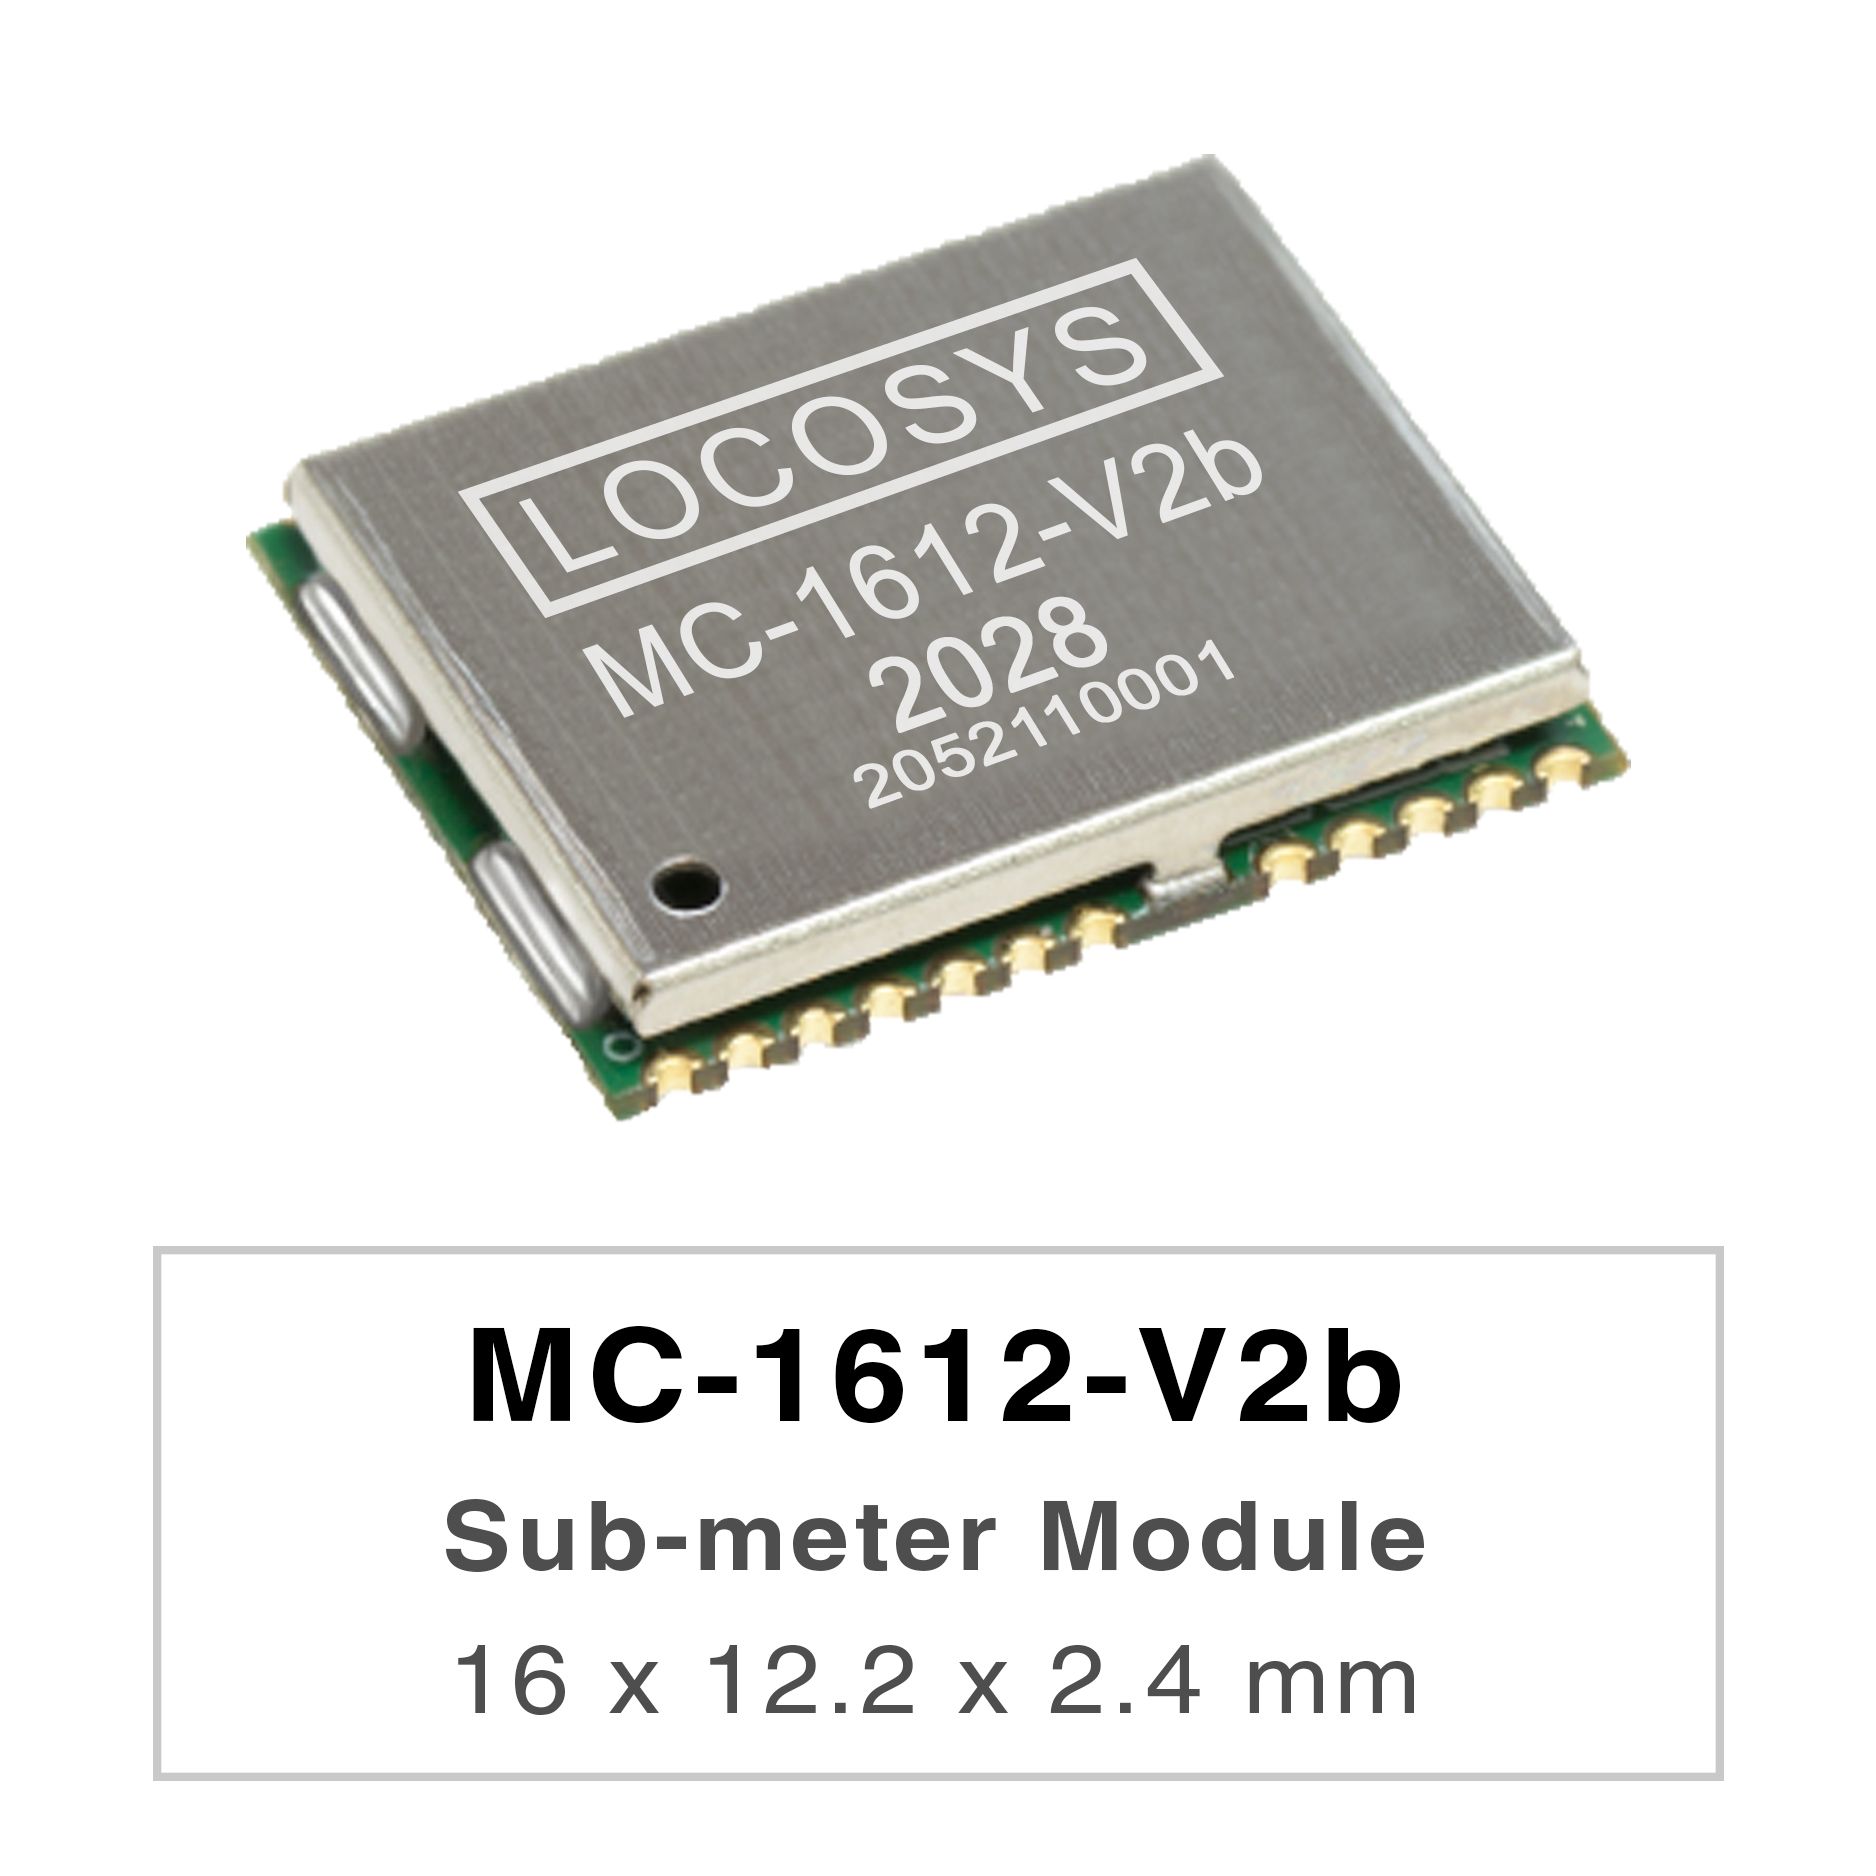 La serie LOCOSYS MC-1612-Vxx son módulos de posicionamiento GNSS de banda dual de alto rendimiento que son
<br />capaces de rastrear todos los sistemas de navegación civil globales. Adoptan un proceso de 12 nm e integran una
<br />arquitectura de administración de energía eficiente para funcionar con baja potencia y alta sensibilidad.